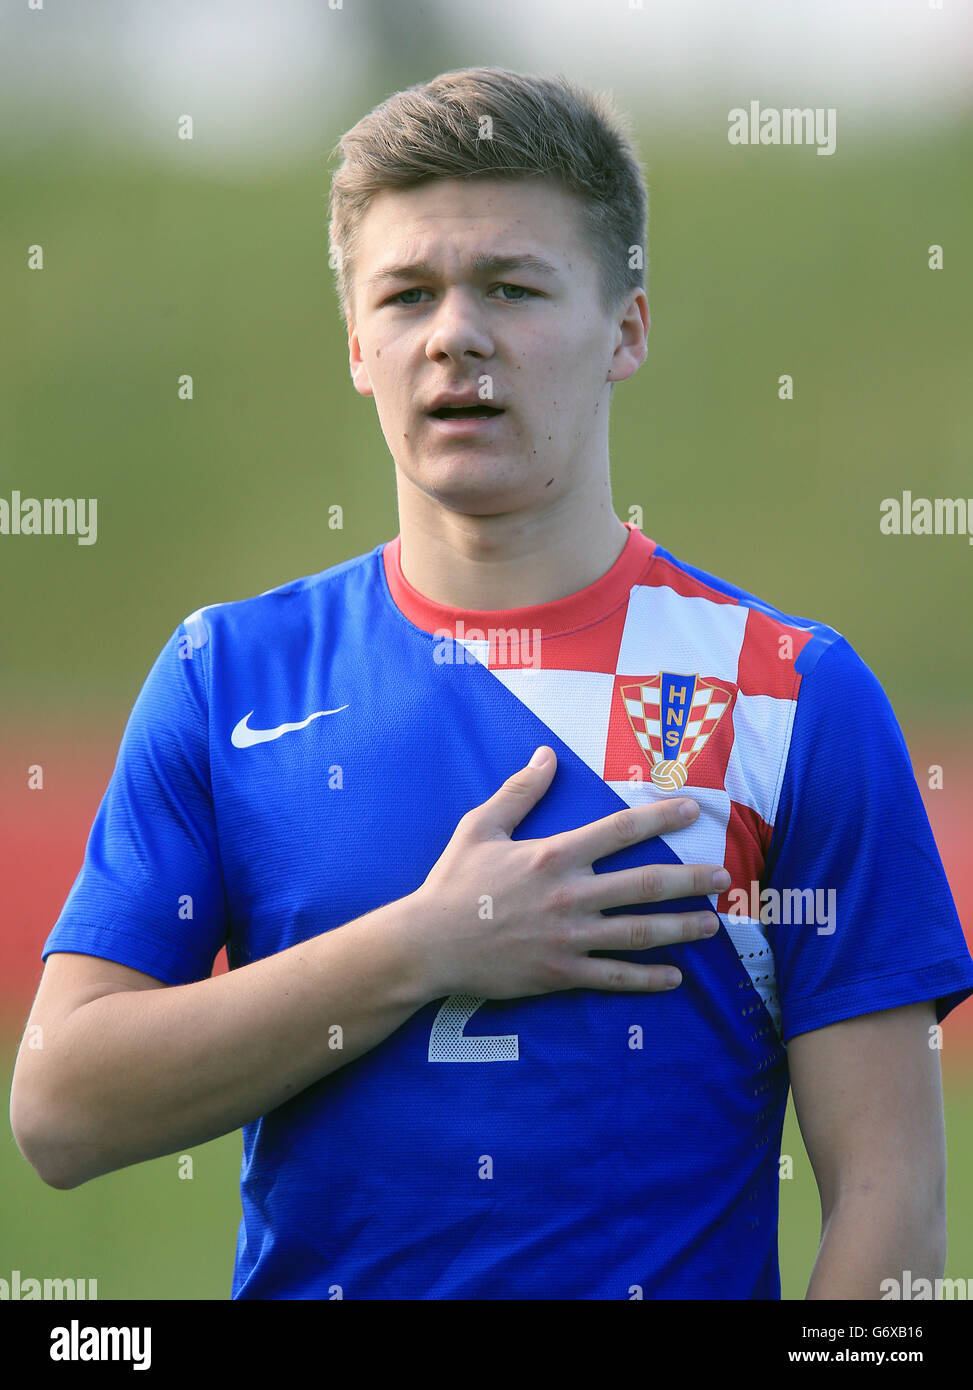 Calcio - Under 18 - Inghilterra / Croazia - St George's Park. Marato Stolnik, Croazia Foto Stock